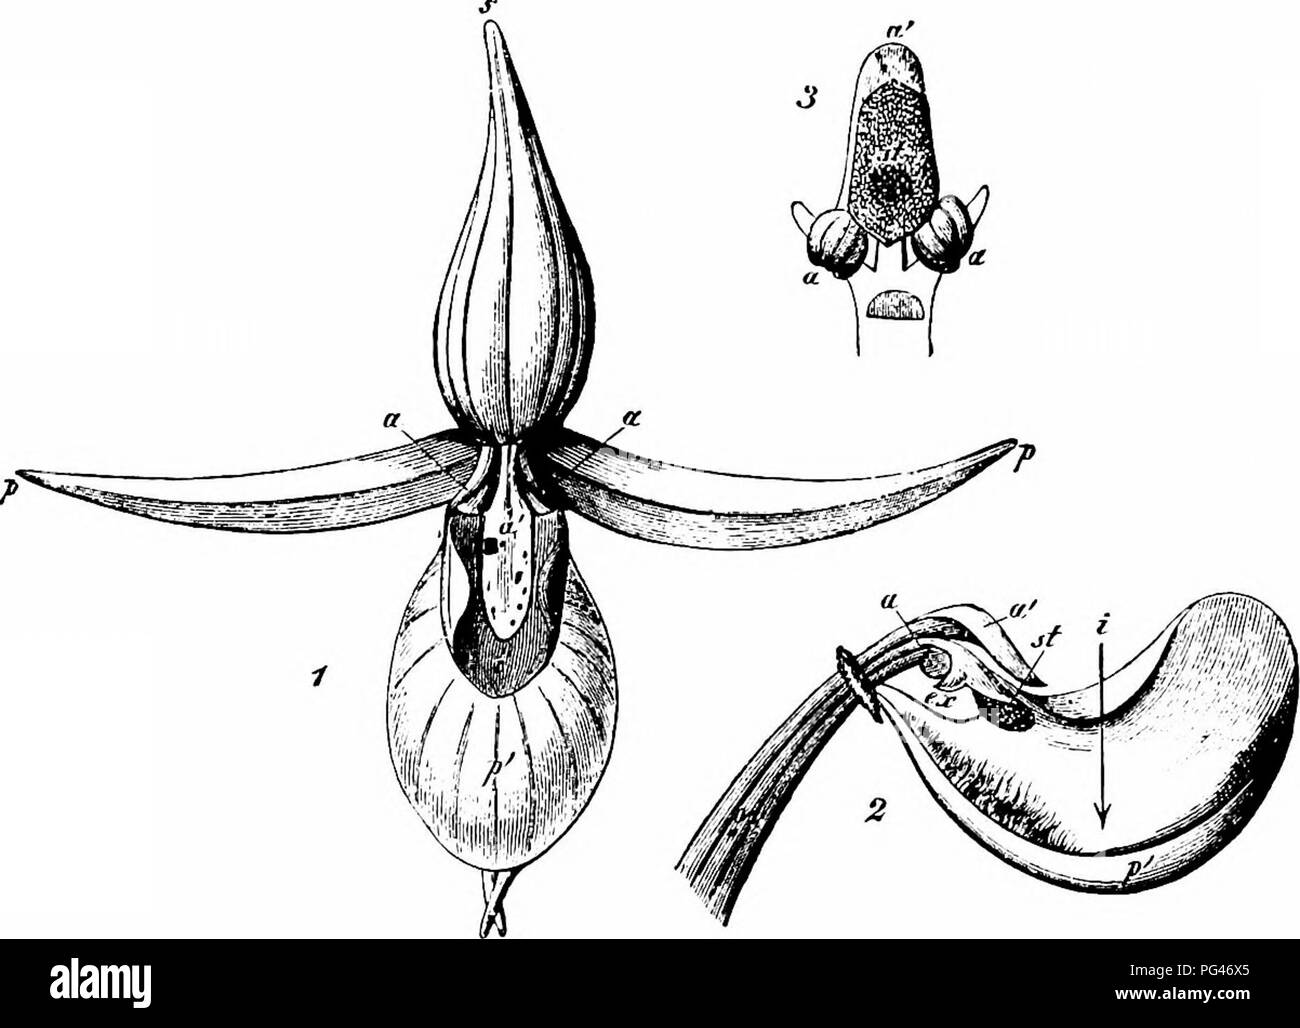 . Manuale di impollinazione dei fiori : basato su Hermann Mu?iler di lavoro "La fertilizzazione di fiori da insetti' . La fecondazione di piante. 420 Angiospermae Monocotyledones-2652. C. Calceolus L. (Herm. MuUer, ' Fertlsn.", p. 539 ; Baxter, ' Fertlzn. Di Cypripedium"; Webster, Trans. Bot. Soc, Edimburgo, XVI, 1886, pagg. 357-60; Darwin, op. cit., p. 226 ; Kerner, ' Nat. Hist. PI.", l'ing. Ed. I, II, pp. 245, 249).-nei fiori di questa specie di leggermente contratta labellum è di colore giallo e il resto del cade lascia viola. Questa colorazione e un odore di nettare attirare piccole api del g Foto Stock